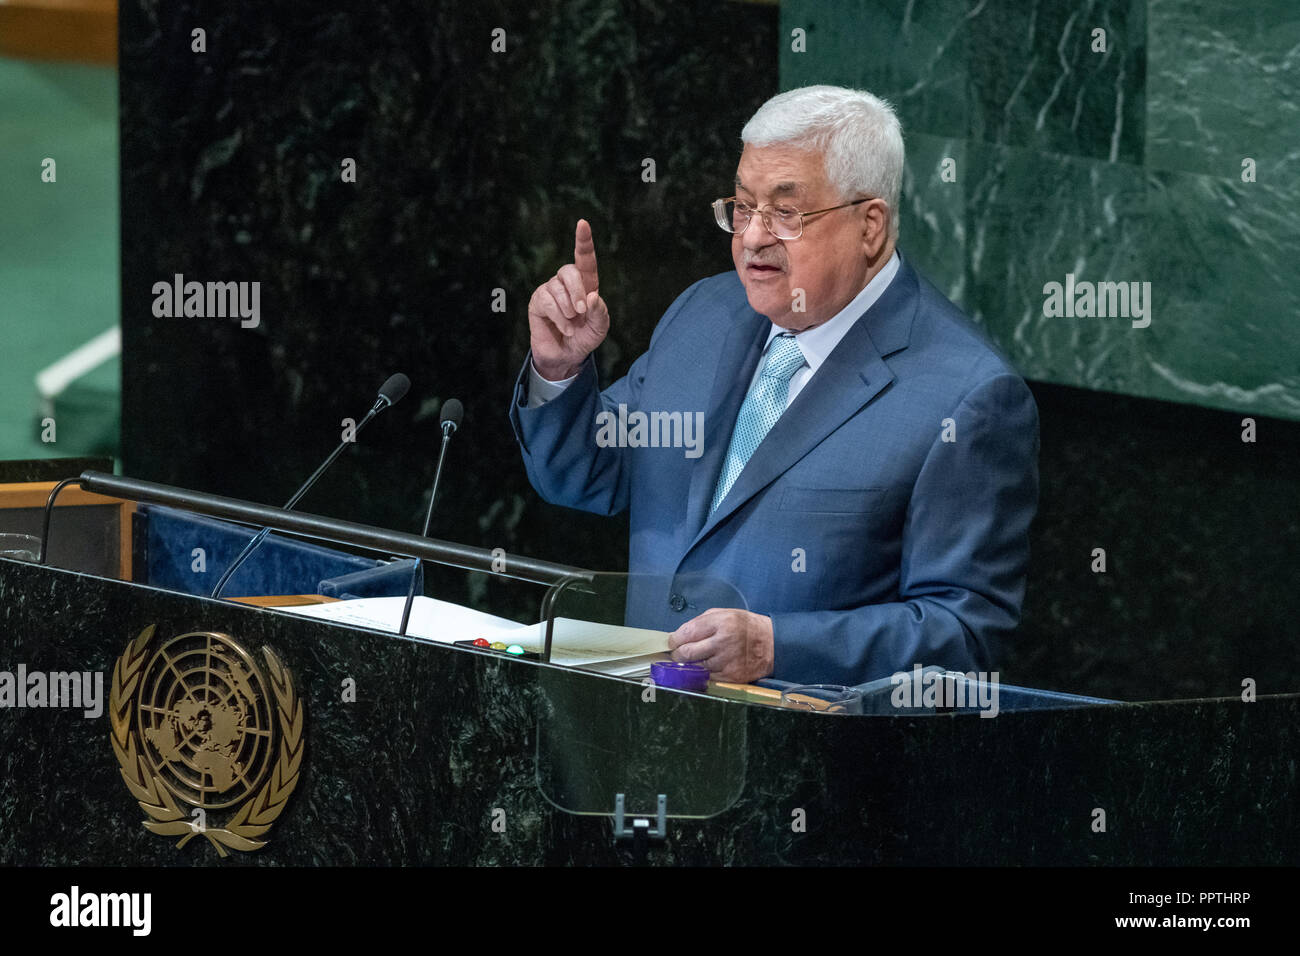 New York, Stati Uniti d'America, 27 settembre 2018. Mahmoud Abbas, Presidente dello Stato di Palestina, indirizzi alla 73a Assemblea generale delle Nazioni Unite presso la sede delle Nazioni Unite a New York City. Foto di Enrique Shore Credit: Enrique Shore/Alamy Live News Foto Stock